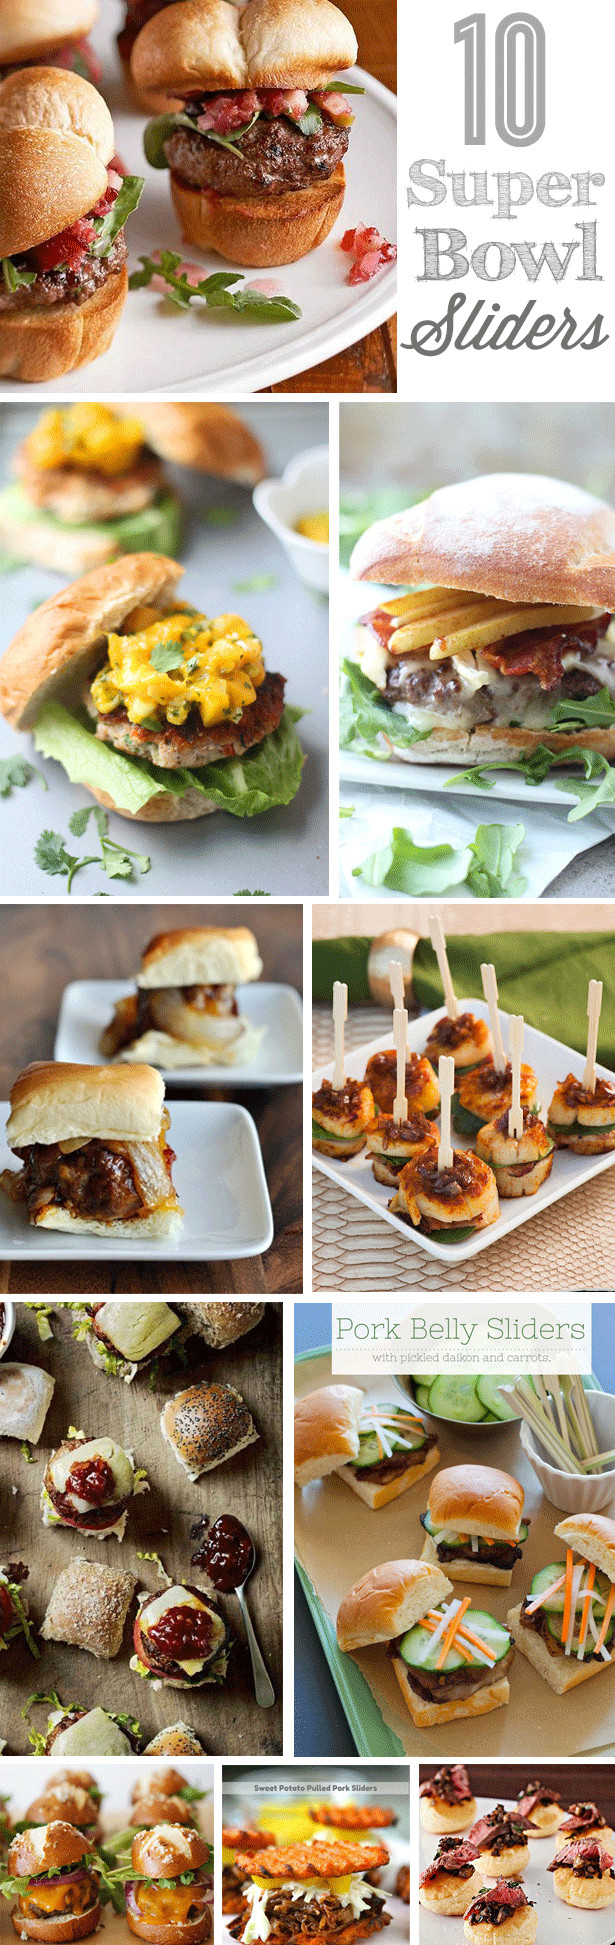 Super Bowl Sliders Recipes
 10 Sliders and Mini Burgers Super Bowl Recipes • The